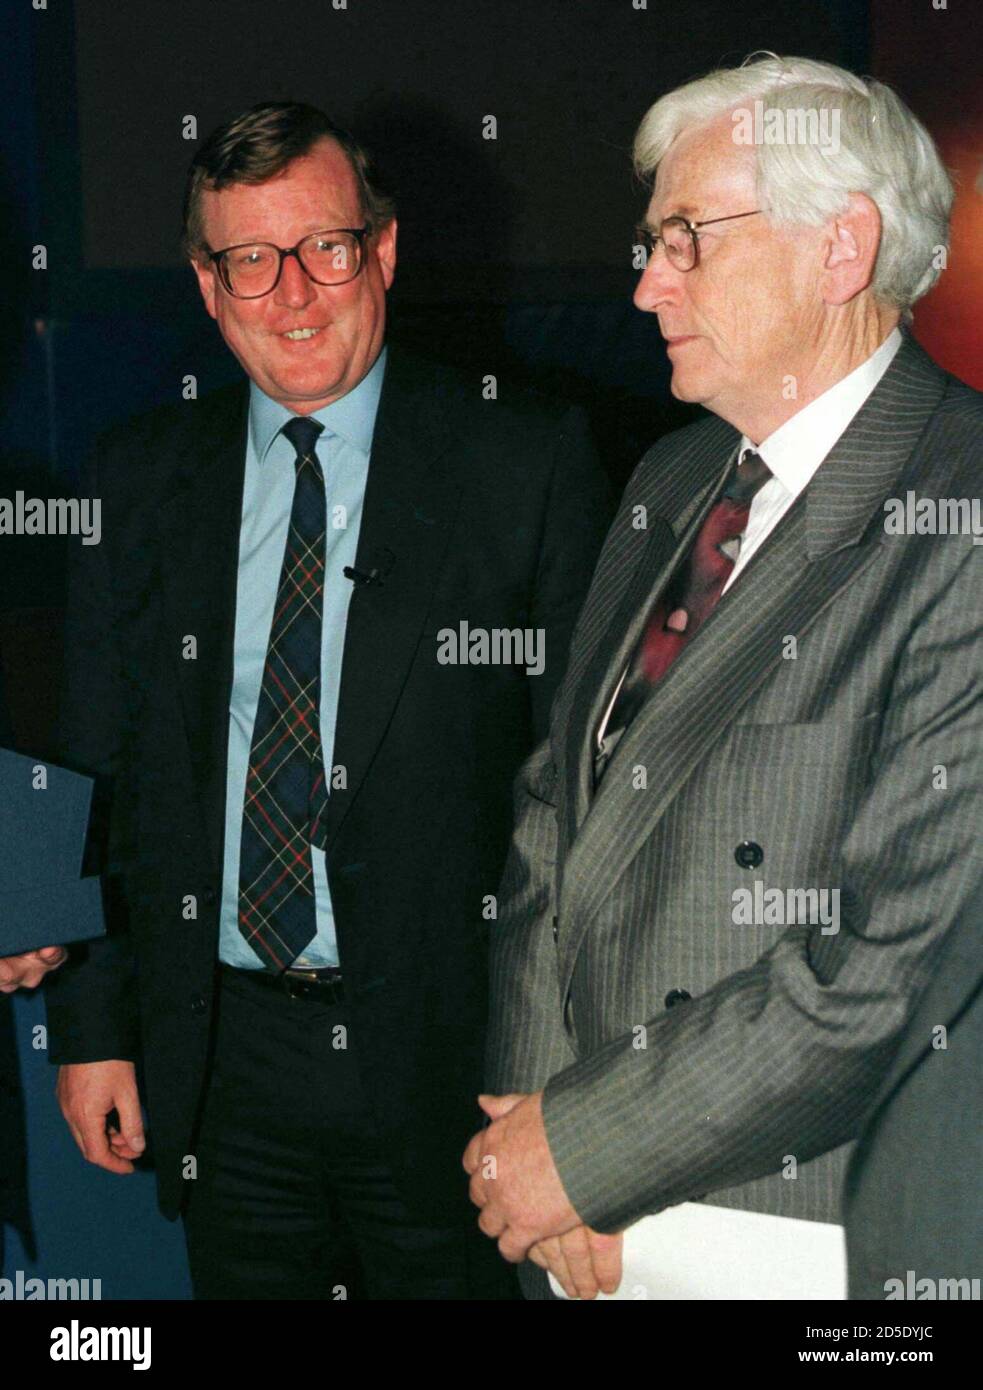 Il leader dell'assemblea dell'Irlanda del Nord David Trimble (L) sorride all'inizio di ottobre 16 dopo essere stato insignito del Premio Nobel per la pace 1998 per gli sforzi volti a porre fine a 30 anni di spargimento di sangue nella provincia. A destra è Seamus Mallon, vice leader del Partito socialdemocratico e laburista il cui leader, John Hume, ha condiviso il premio con Trimble. I due uomini erano a Denver per una conferenza d'affari. RTW/WS Foto Stock